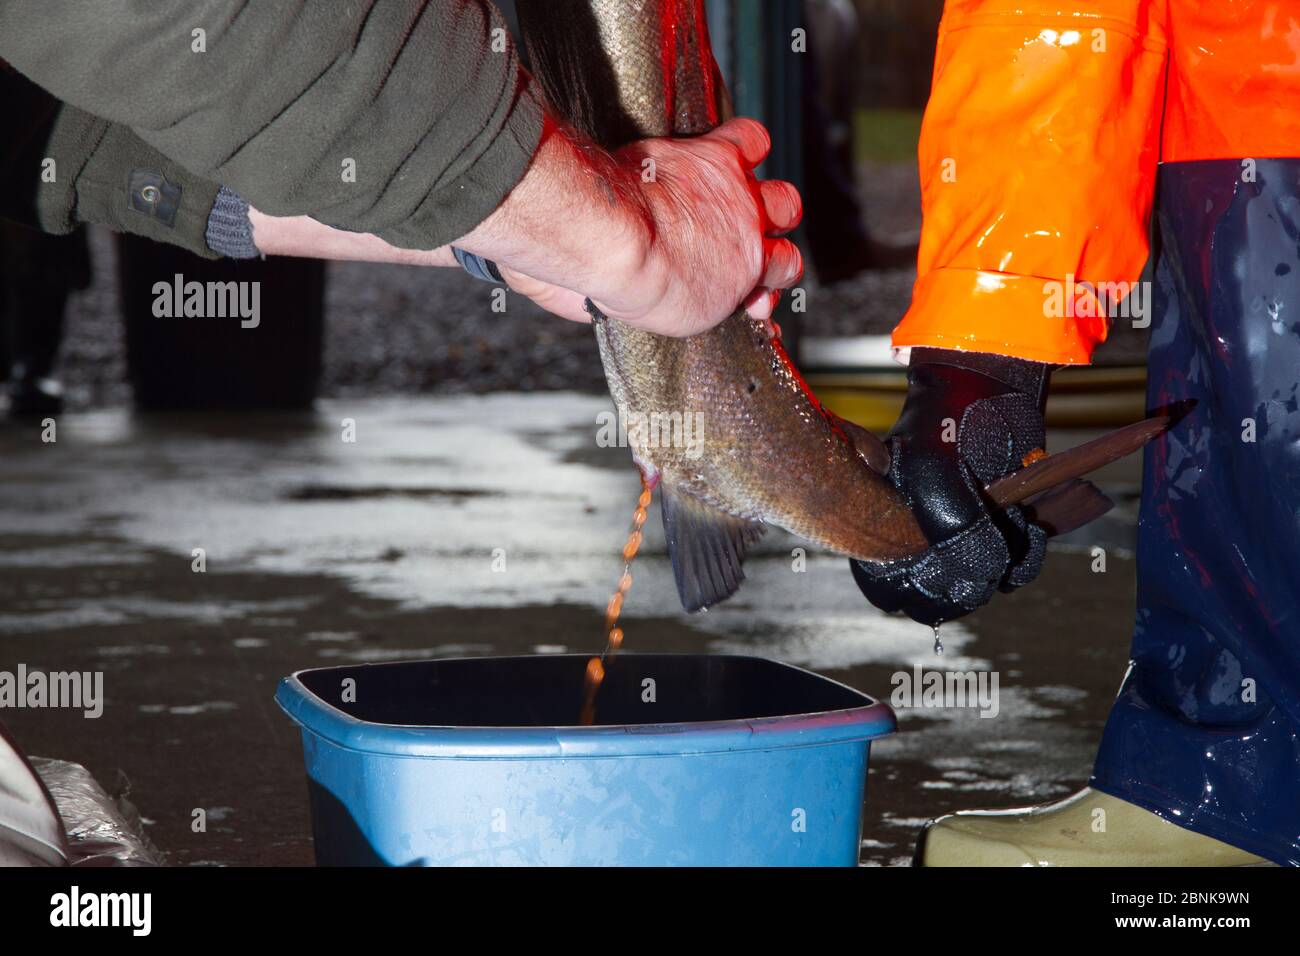 Collecte d'oeufs de saumons atlantiques sauvages (Salmo salar) femelles pour frayer dans des conditions contrôlées, écloserie de Sandbank, Glenlivet, Moray, Écosse Banque D'Images